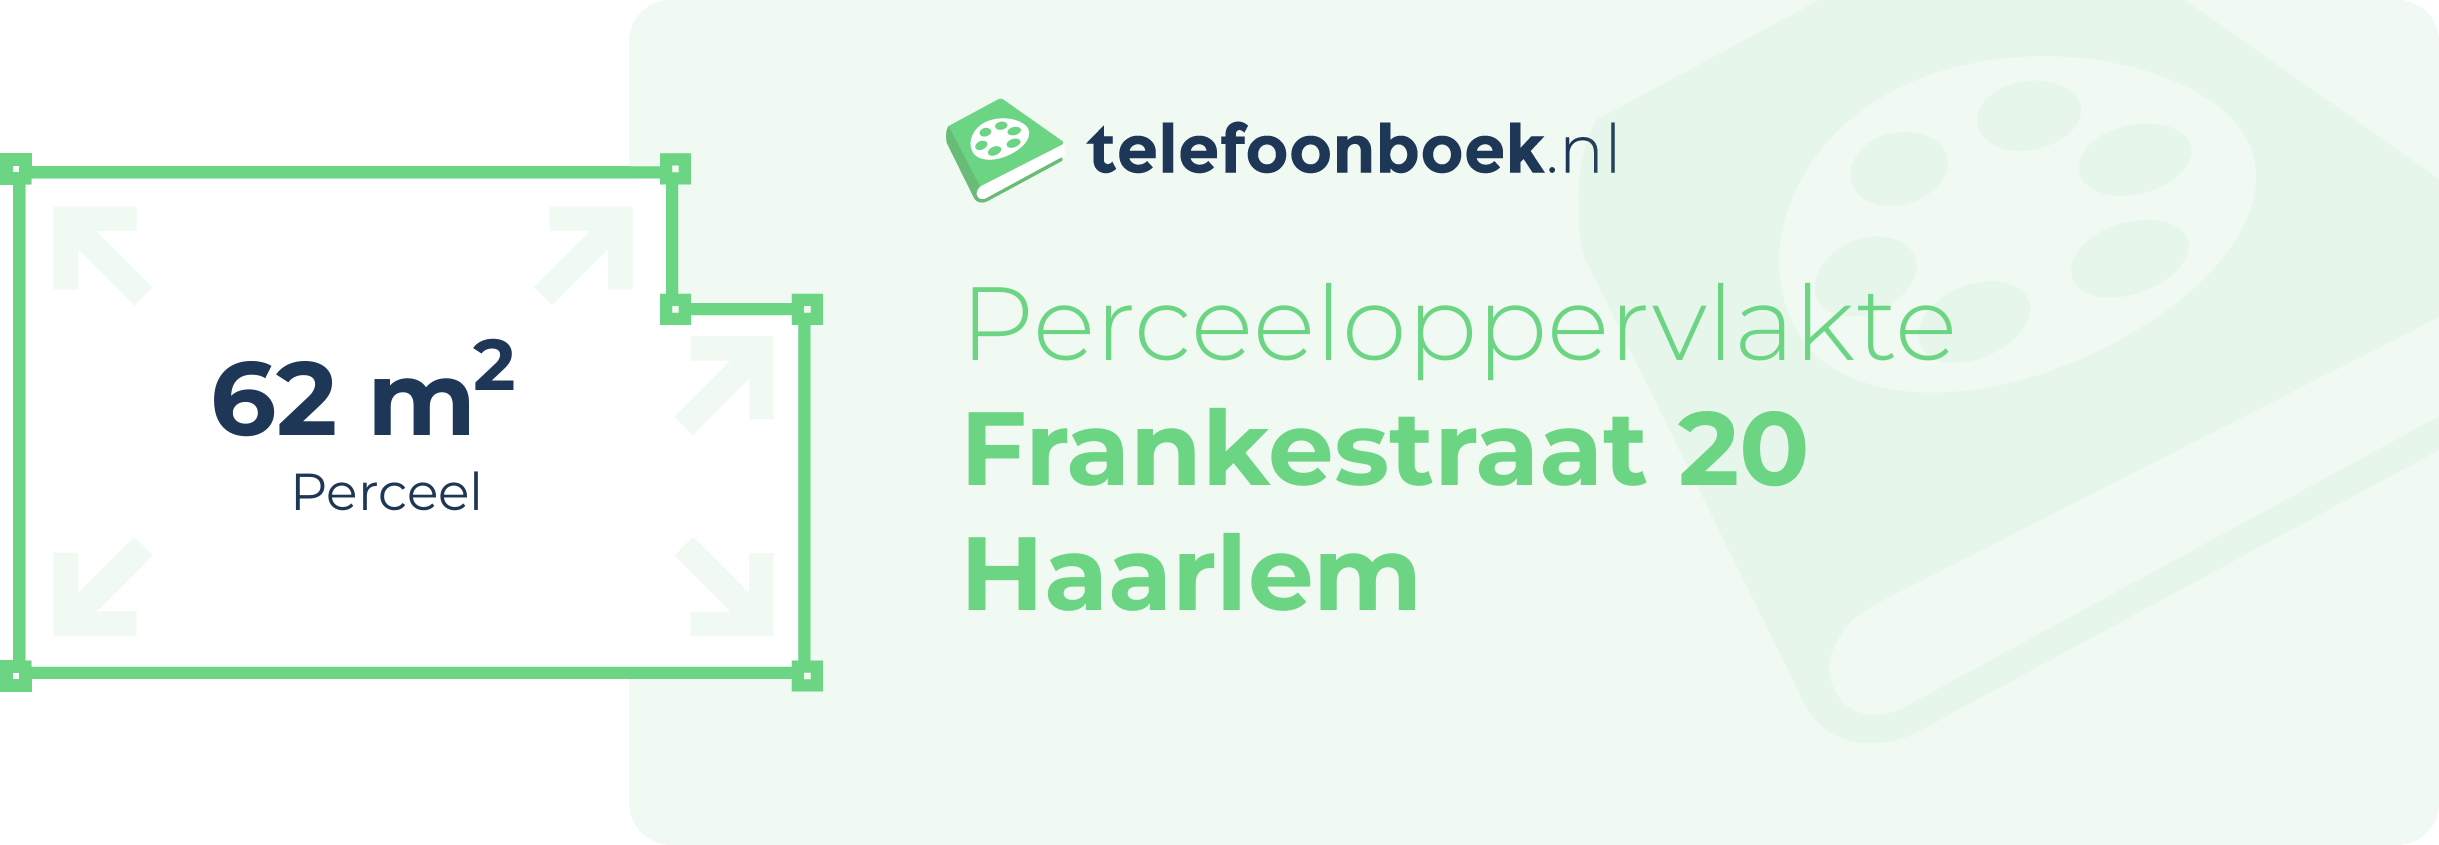 Perceeloppervlakte Frankestraat 20 Haarlem